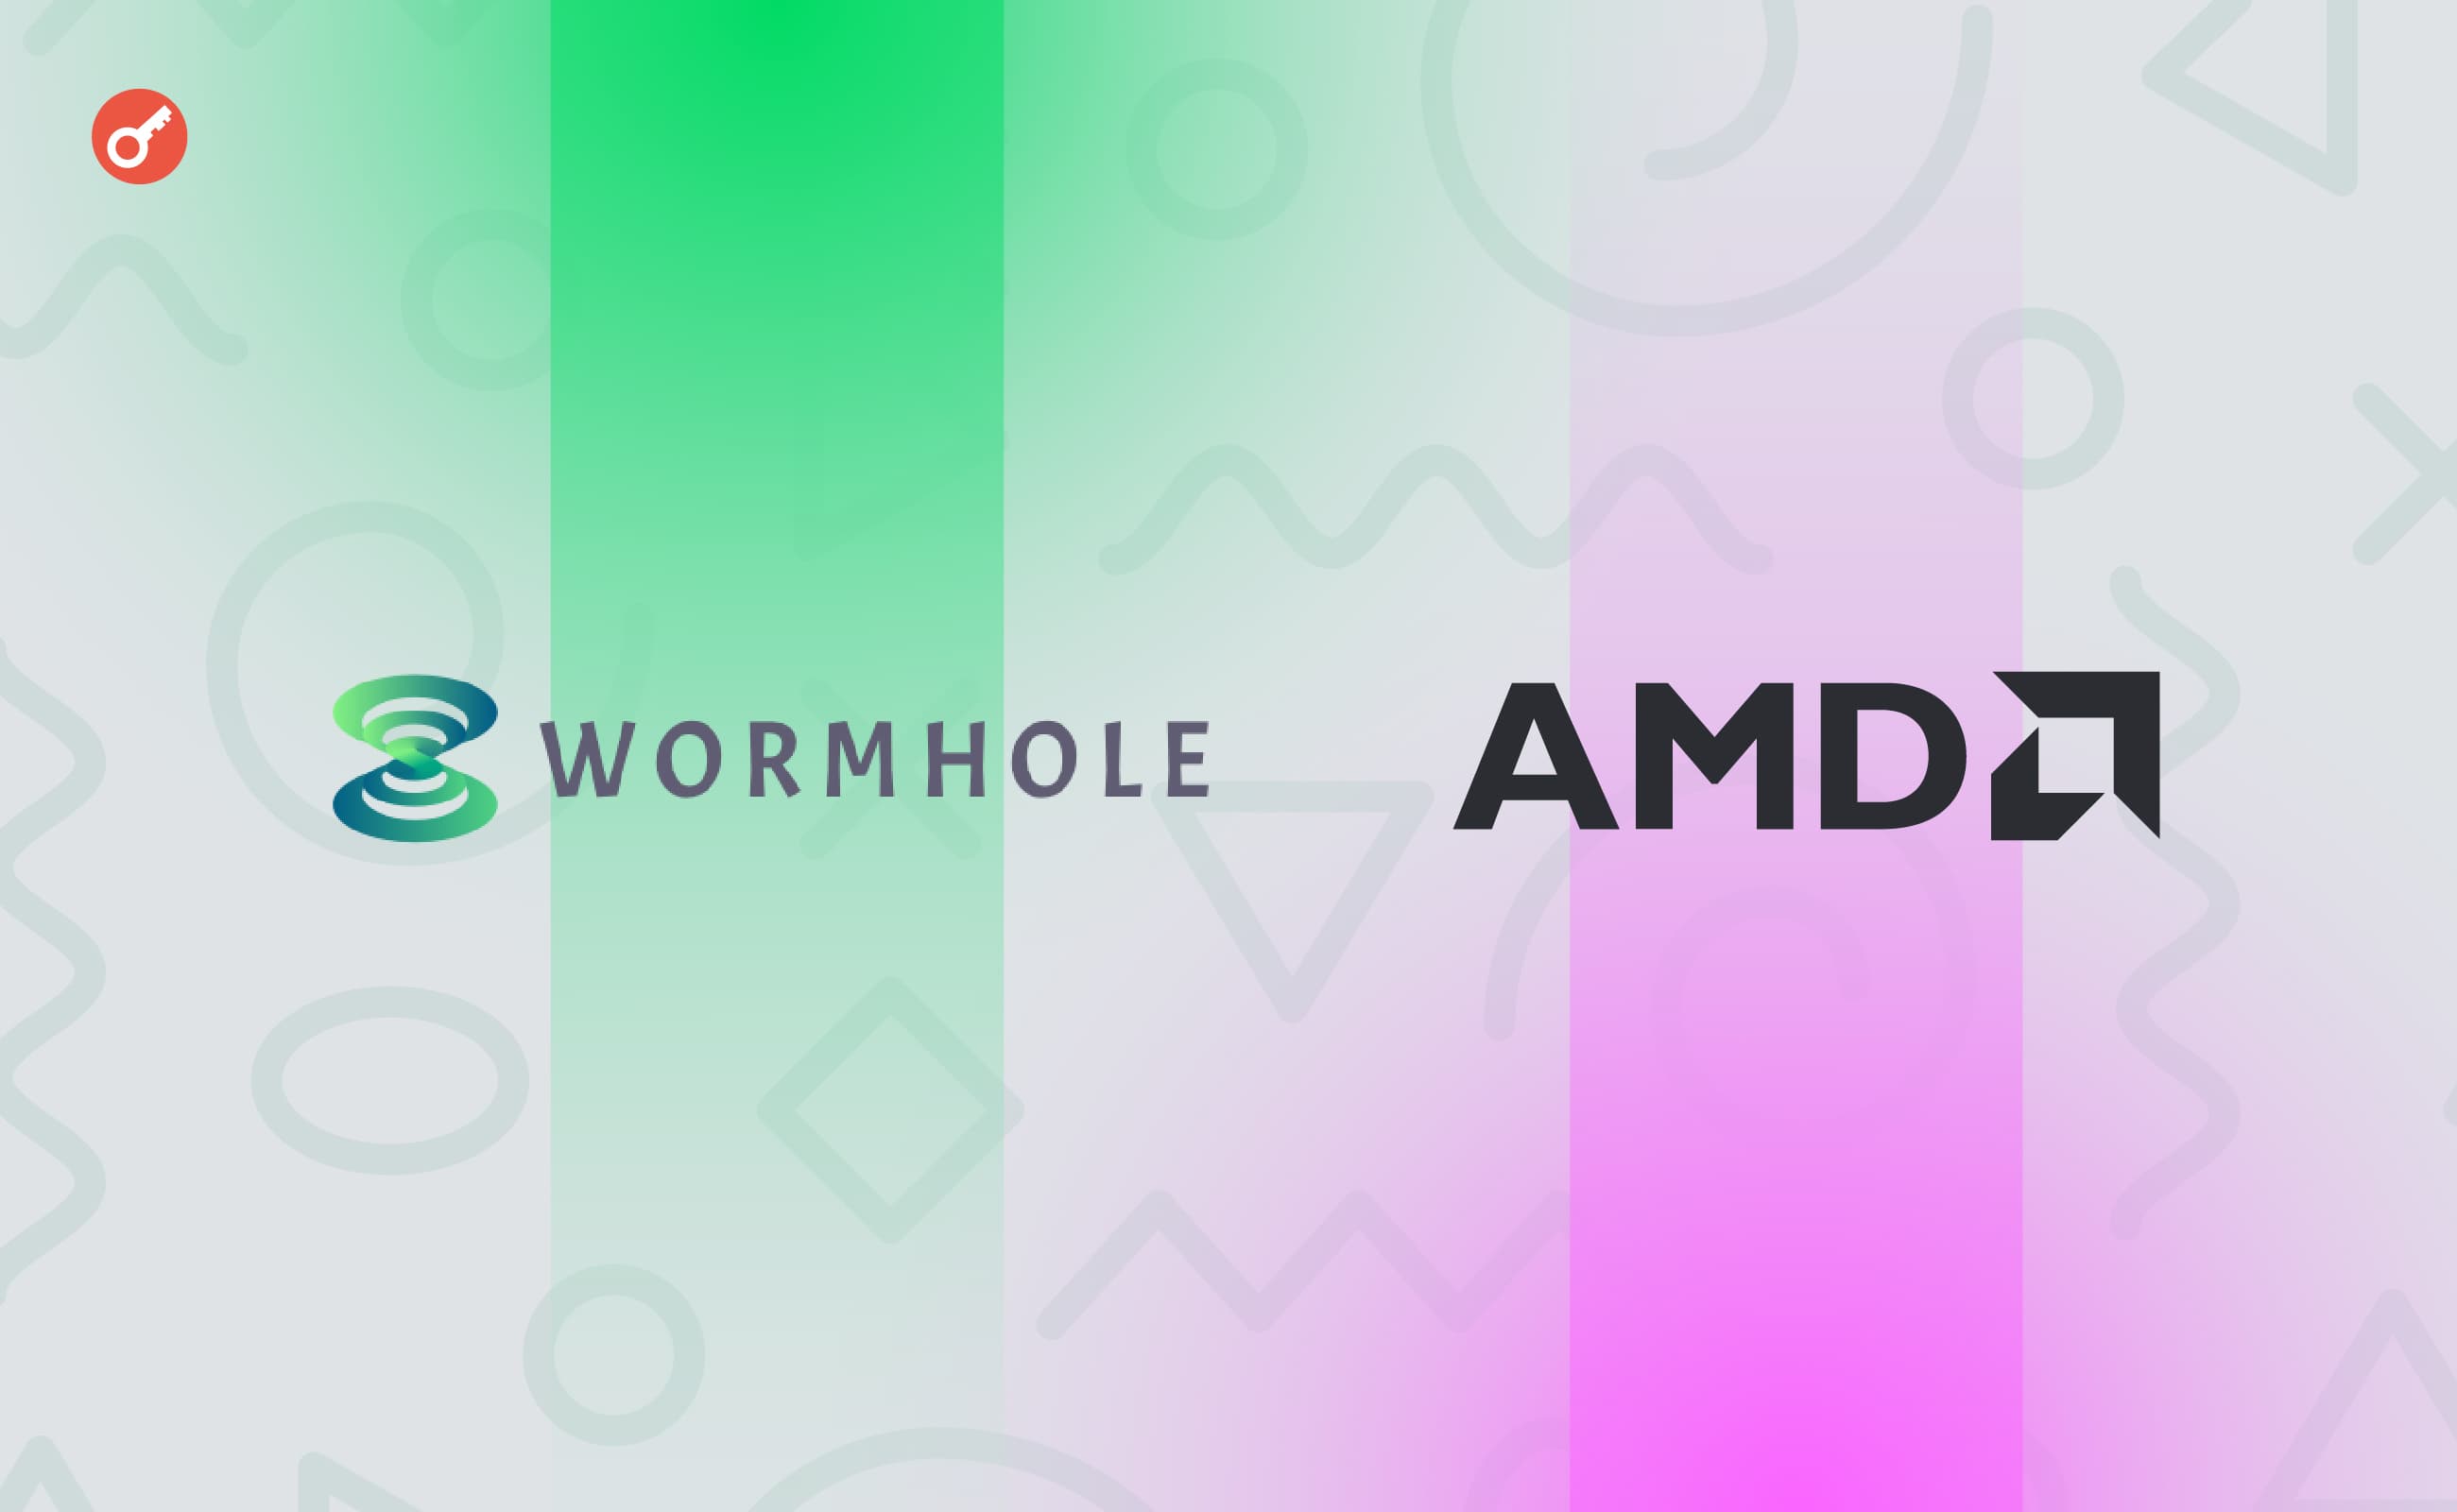 Wormhole оголосив про партнерство з AMD. Головний колаж новини.